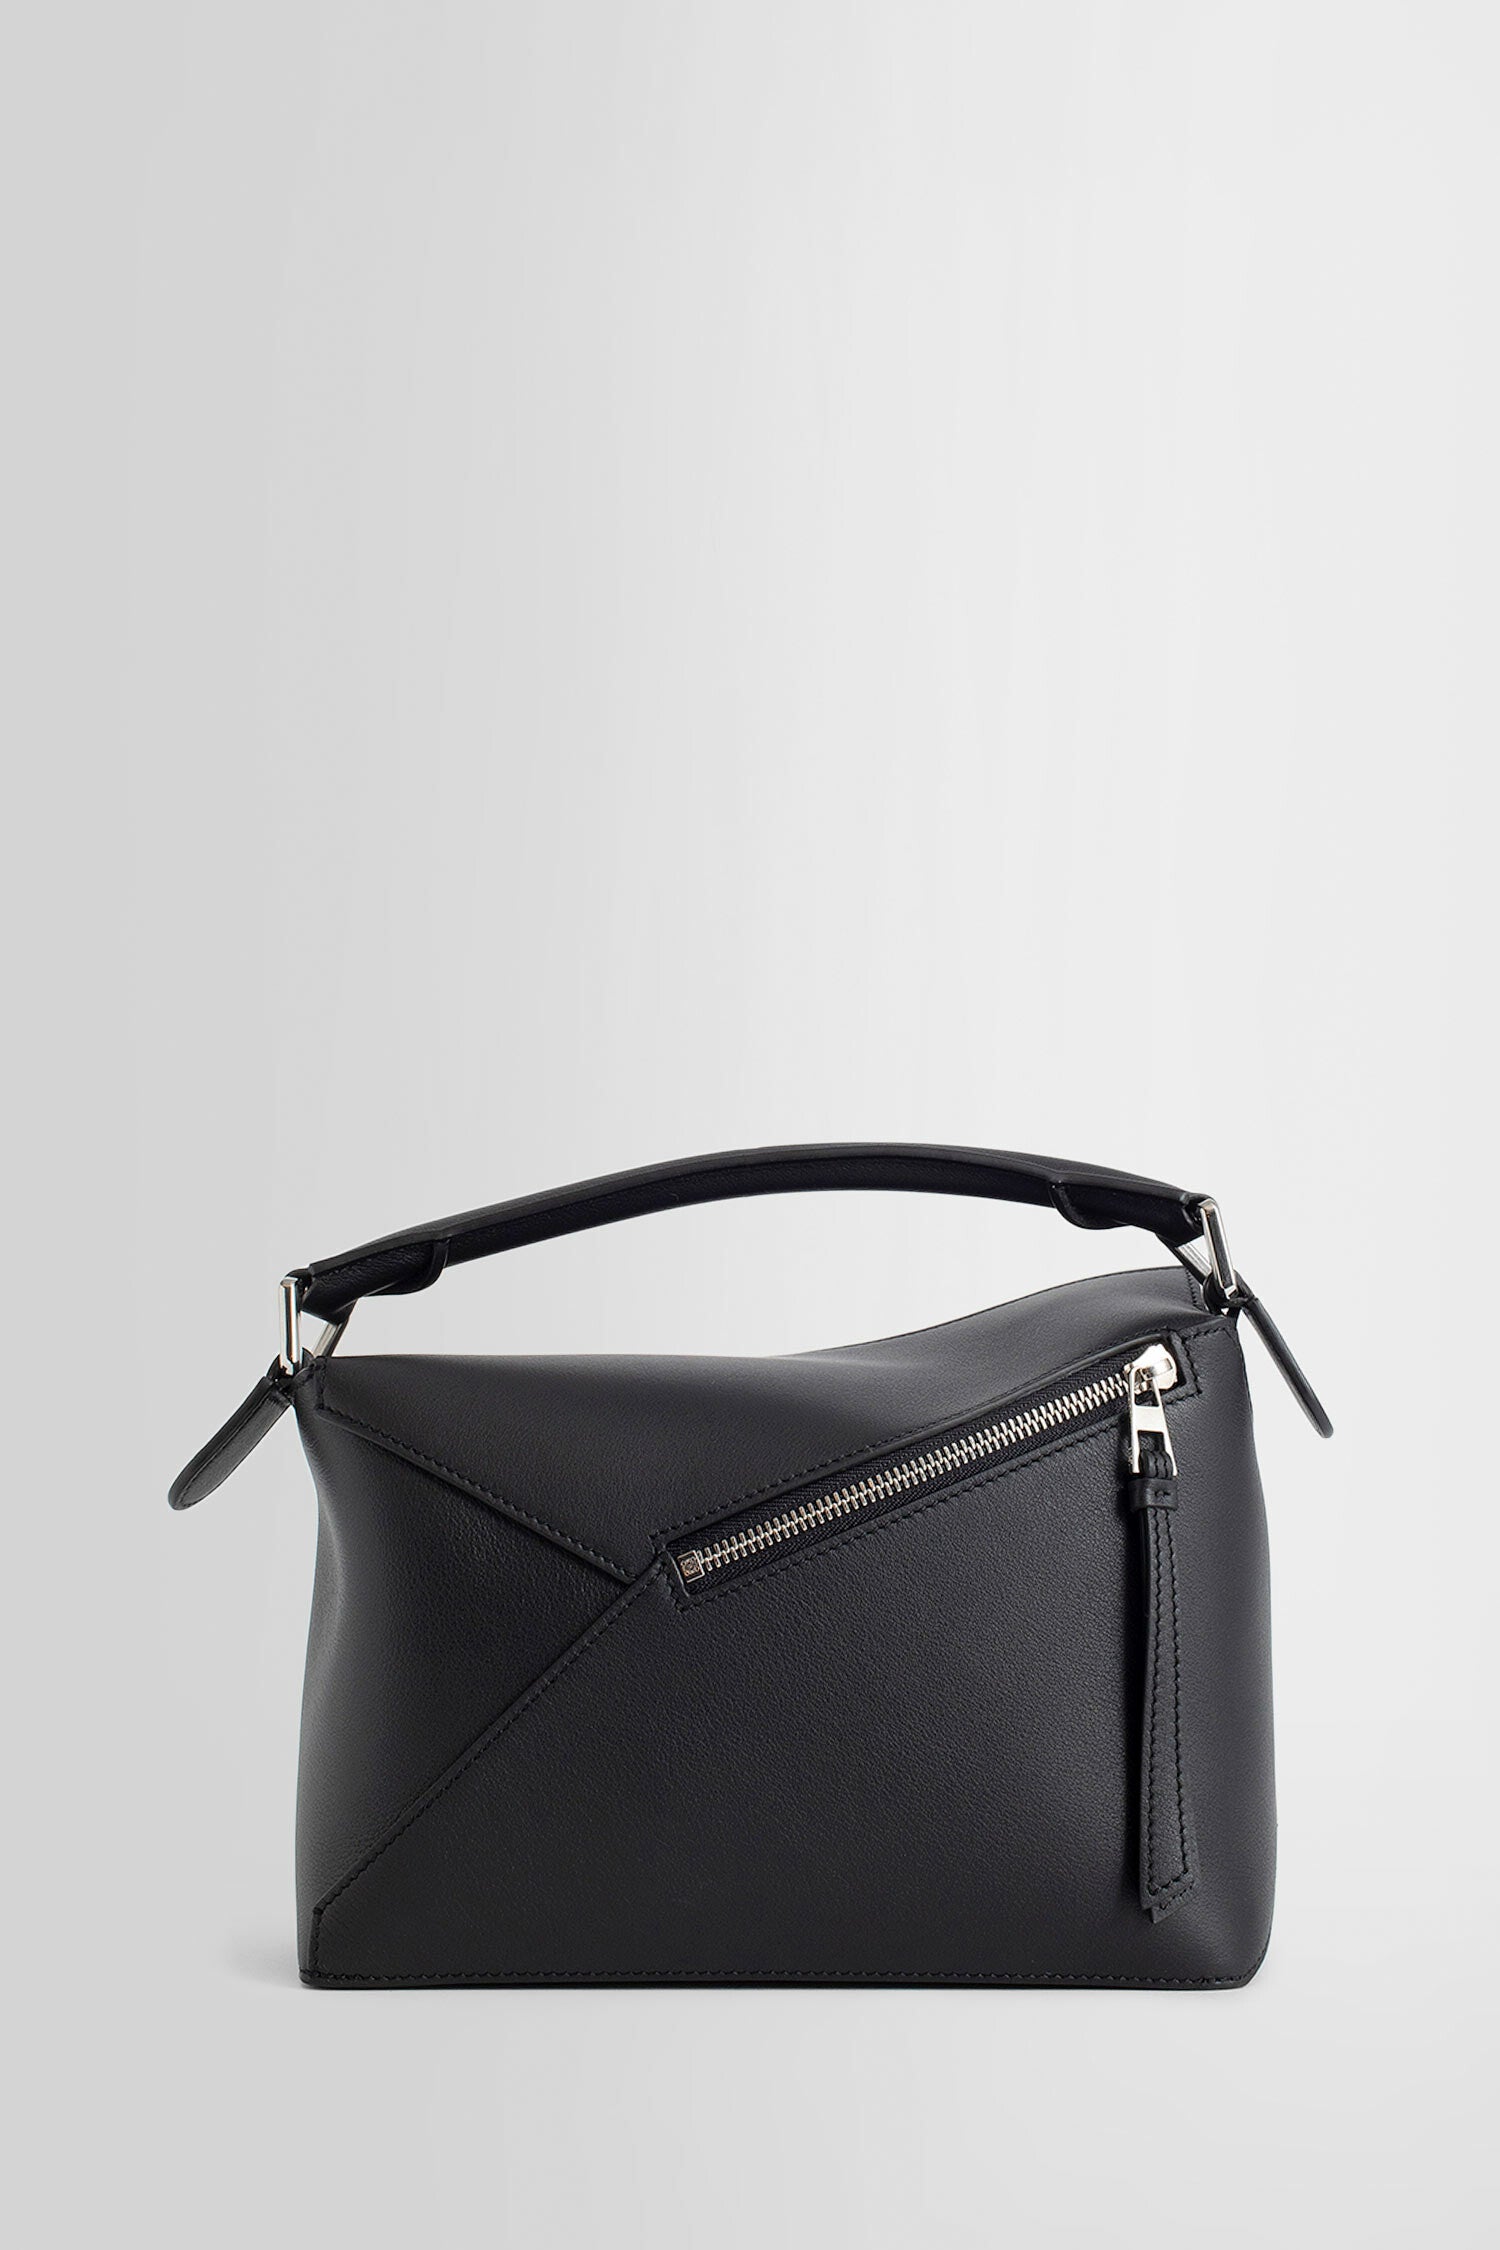 Leather Top Handle Bag, White Leather Handbag Top Handle, Women's Leather  Bag KF-2996 - Etsy | Cartera de moda, Carteras, Mochila de moda